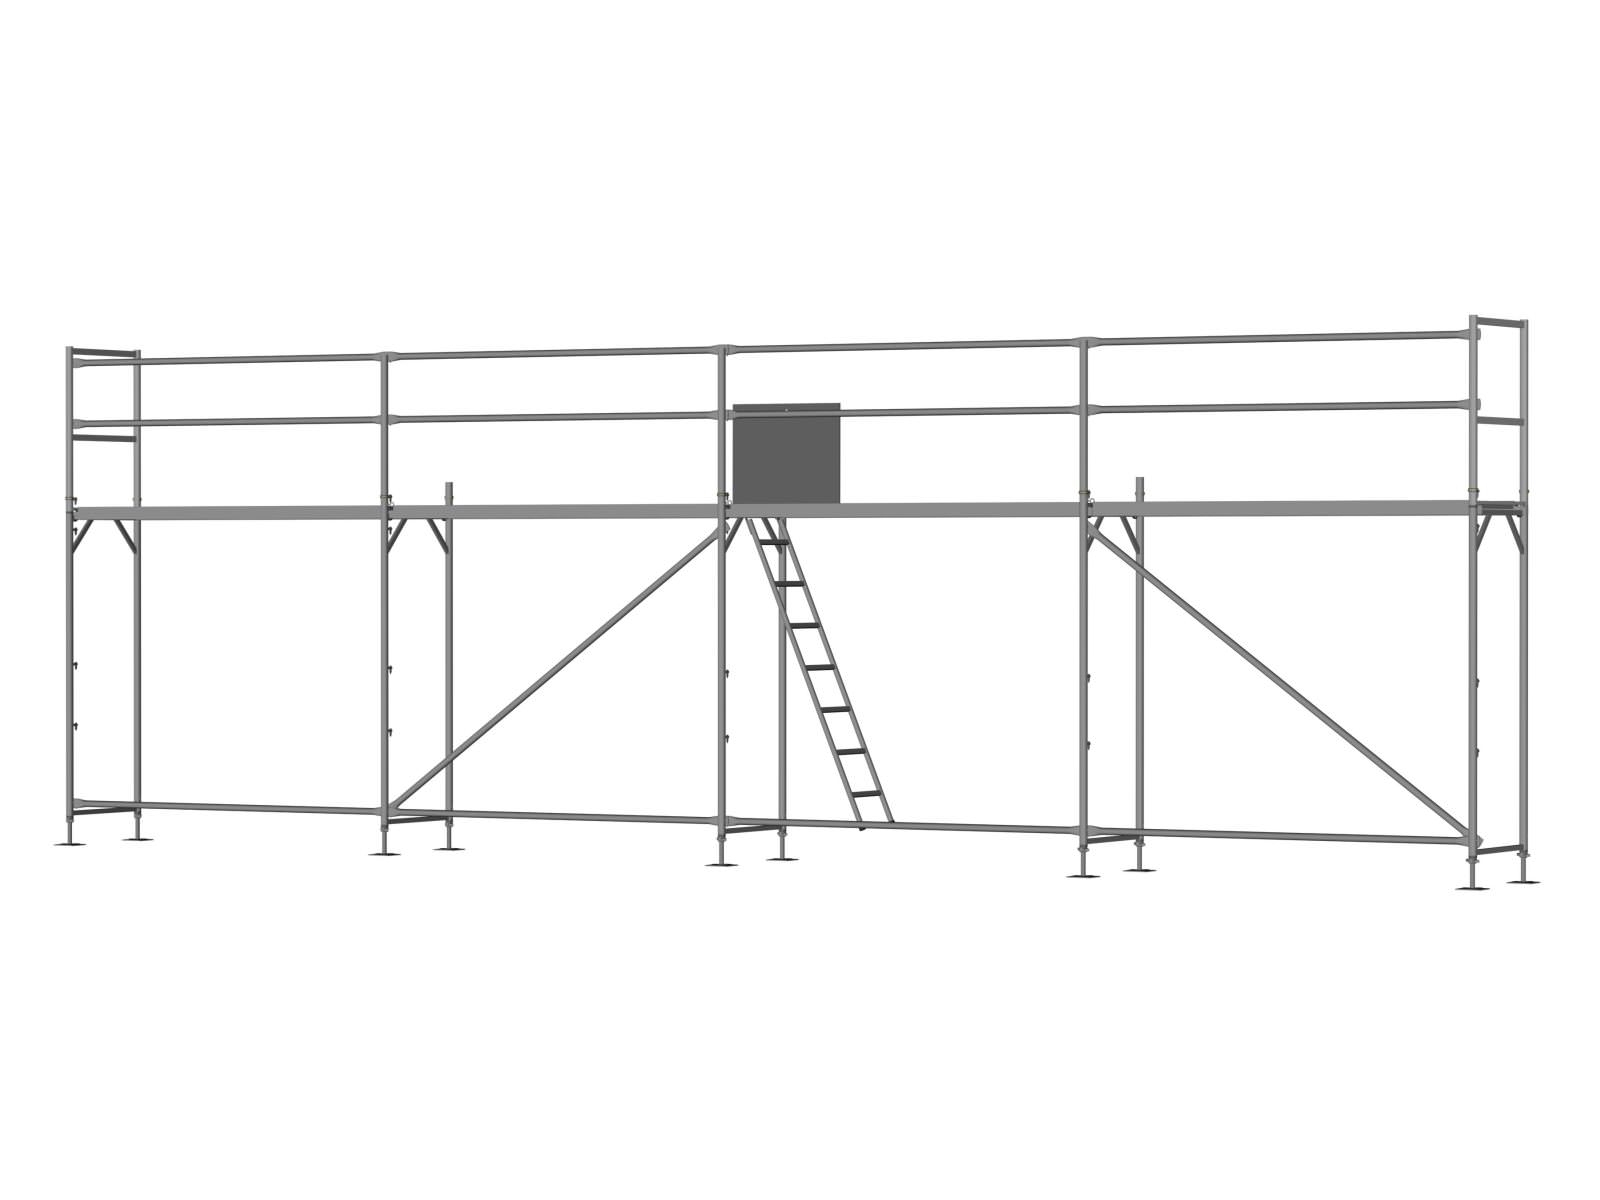 Alu Traufseitengerüst 40 qm - 2,5 m Felder - 10 m lang - 4 m Arbeitshöhe, inkl. Aufstieg & Befestigung